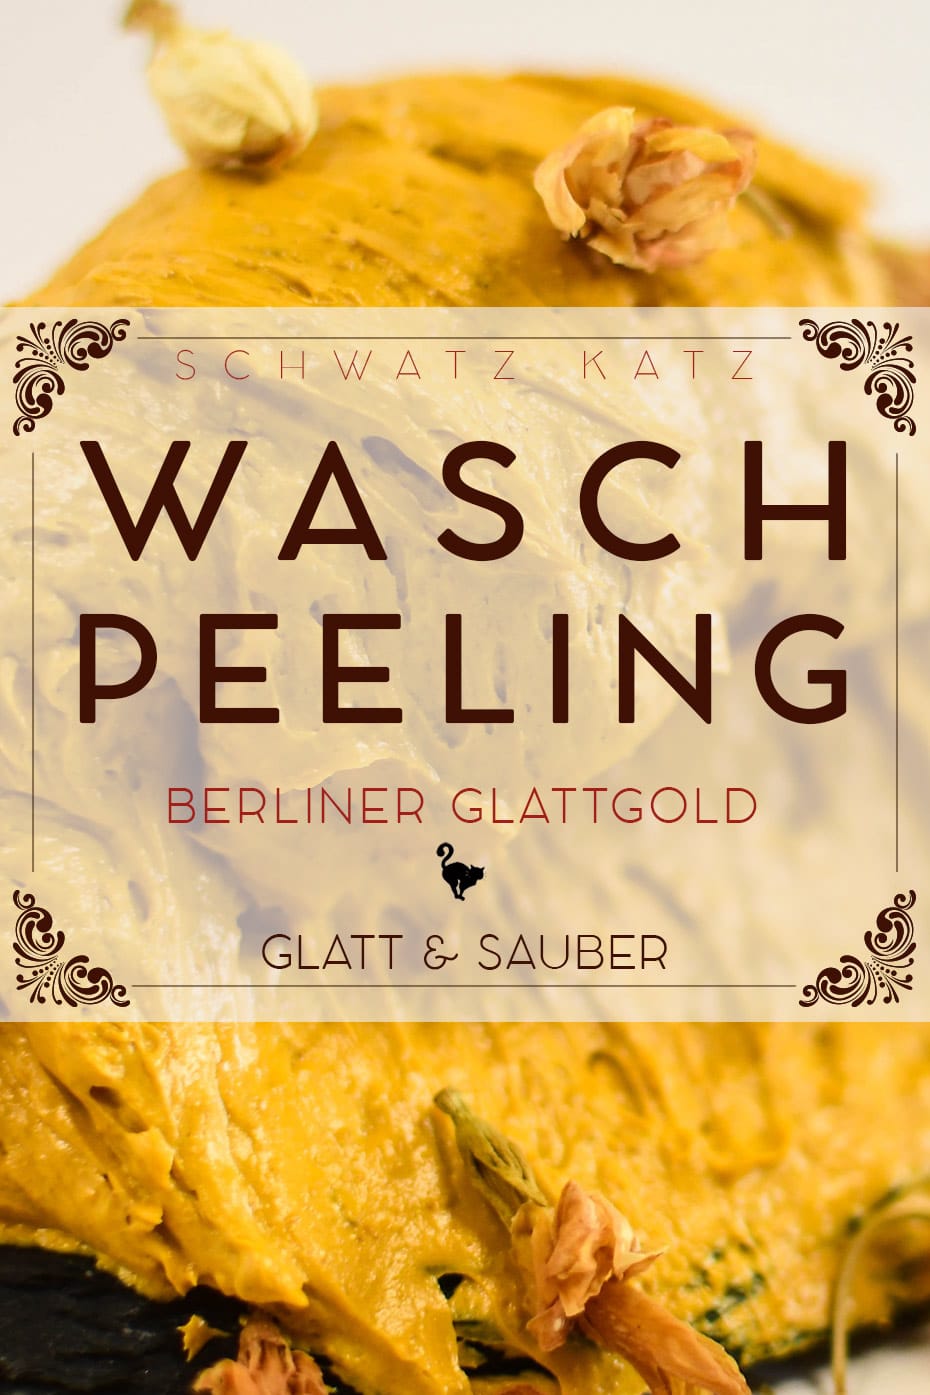 Babassu Waschpeeling »Berliner Glattgold« mit mildem Tensid | Schwatz Katz